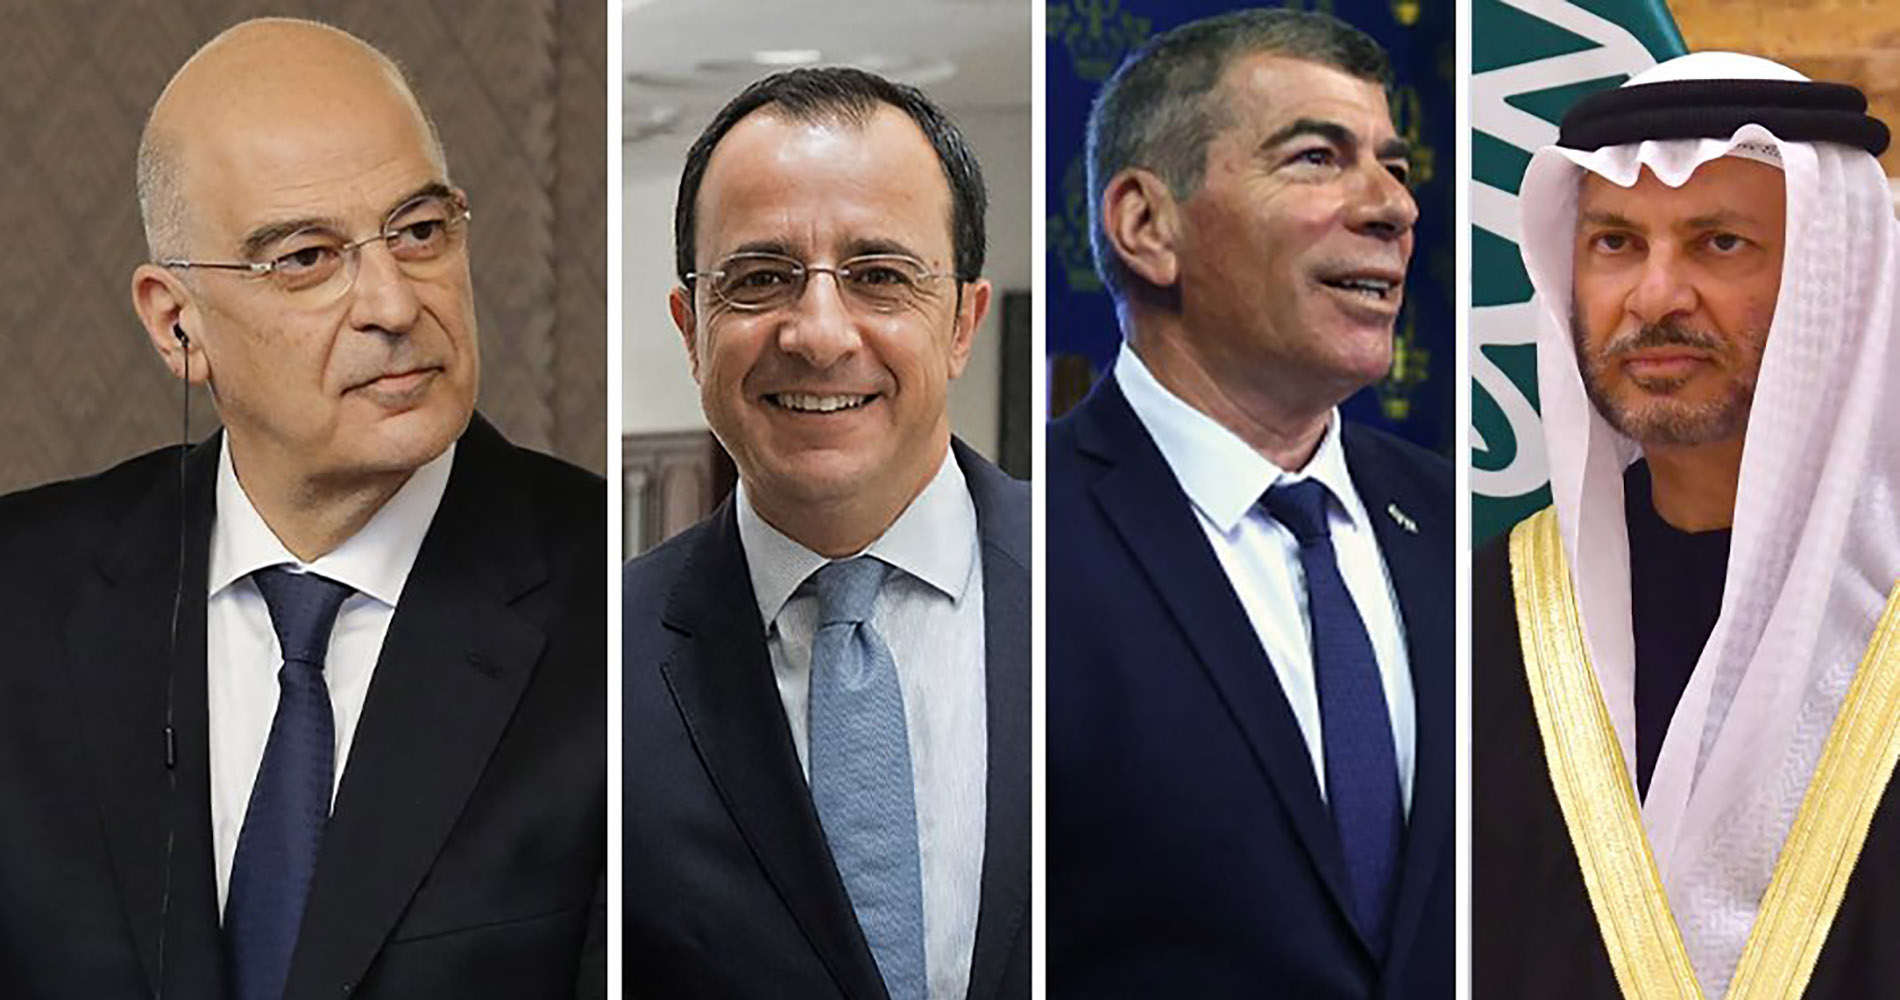 اجتماع يضم كل من وزراء خارجية اليونان وإسرائيل والإمارات وقبرص